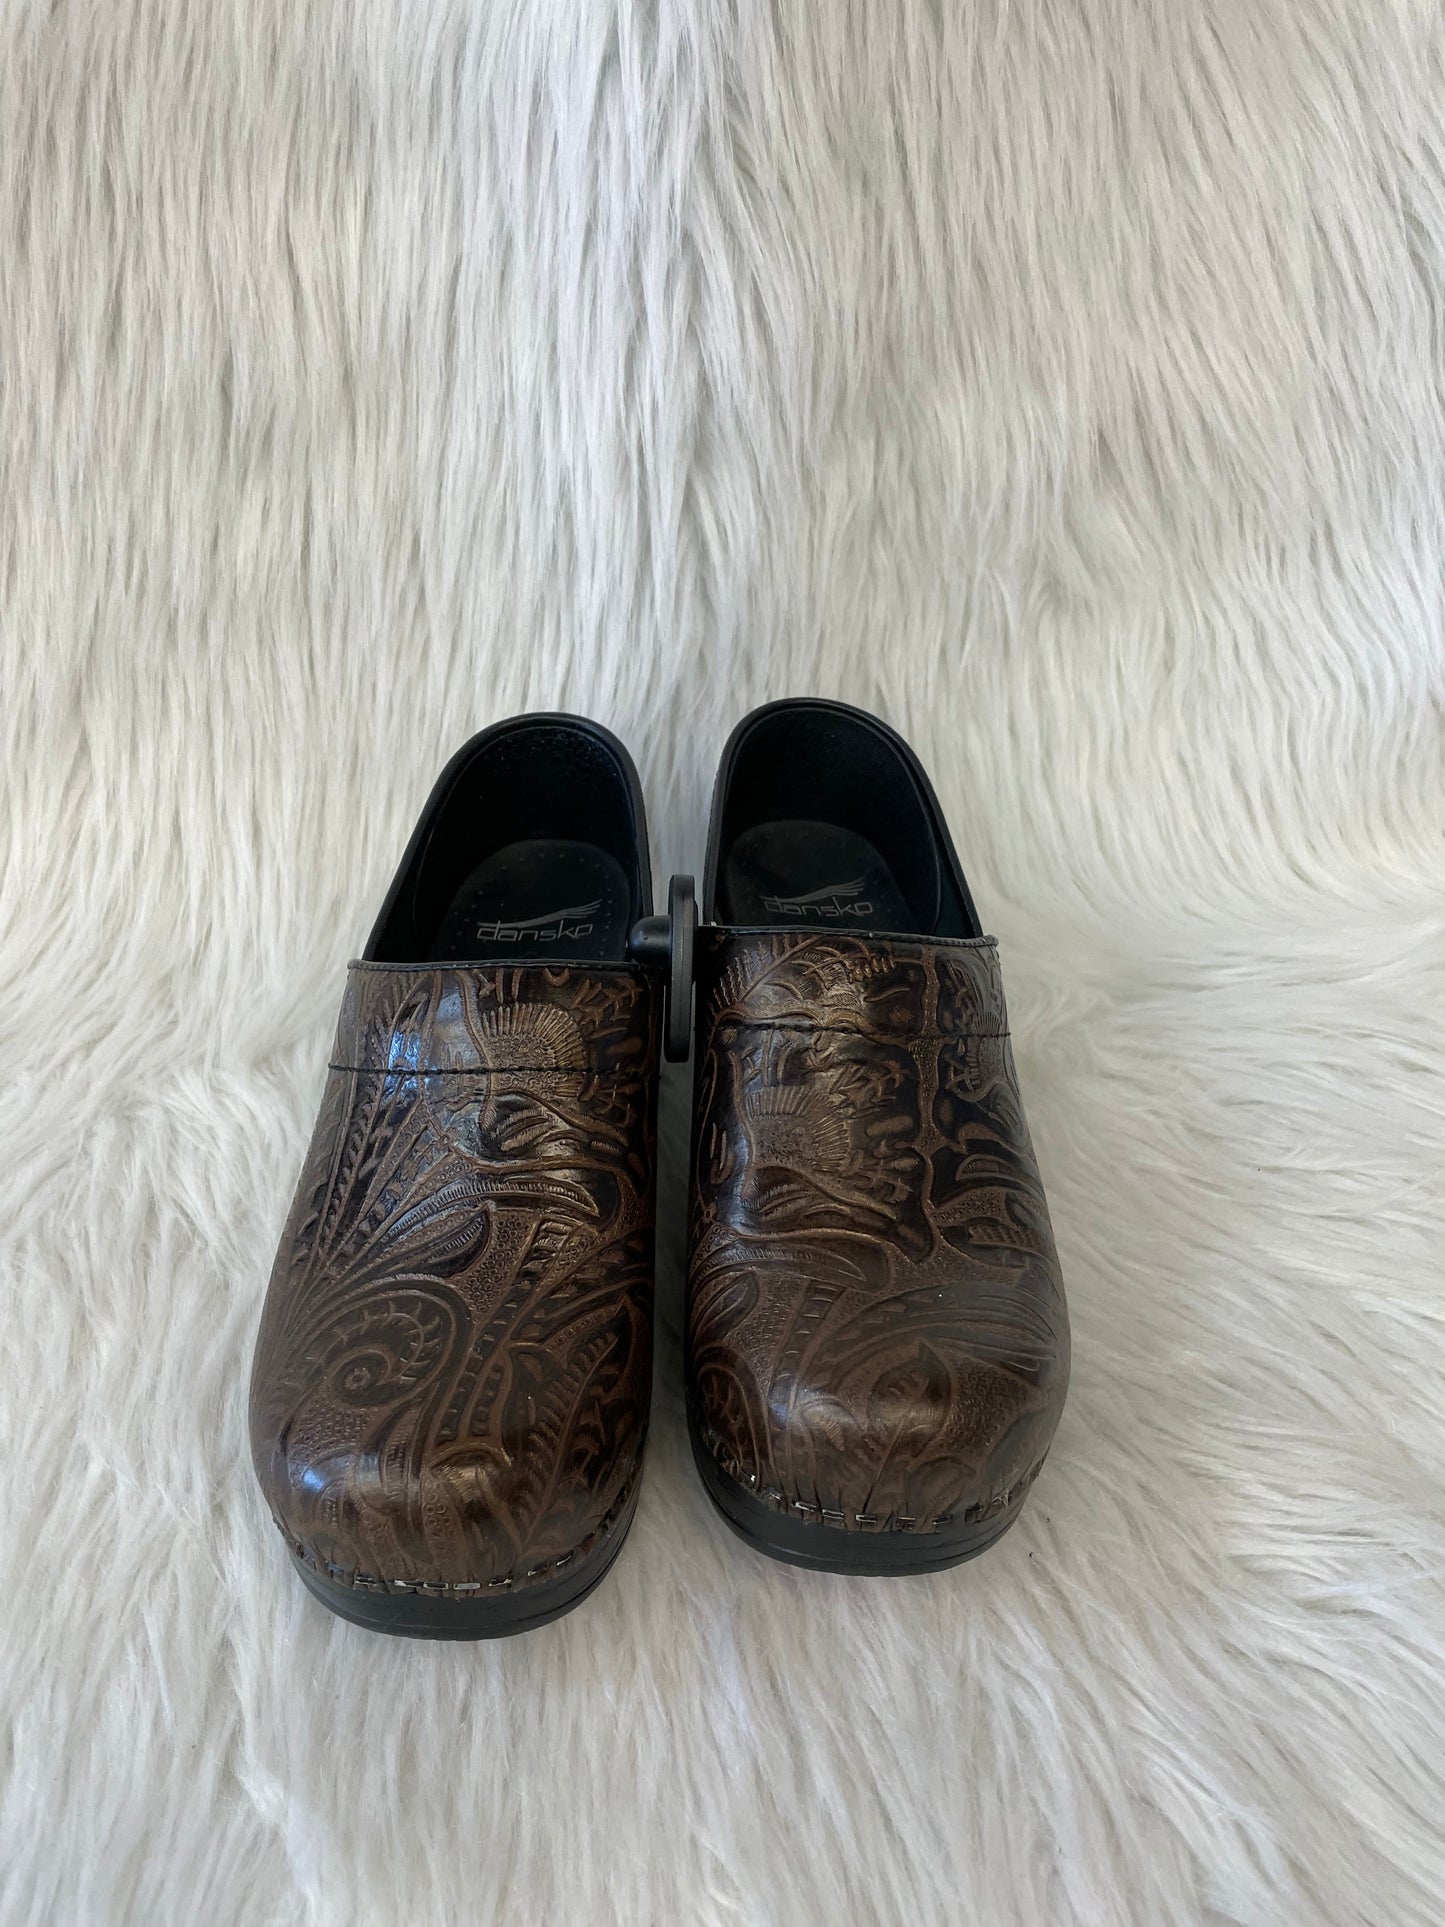 Brown Shoes Heels Wedge Dansko, Size 6.5